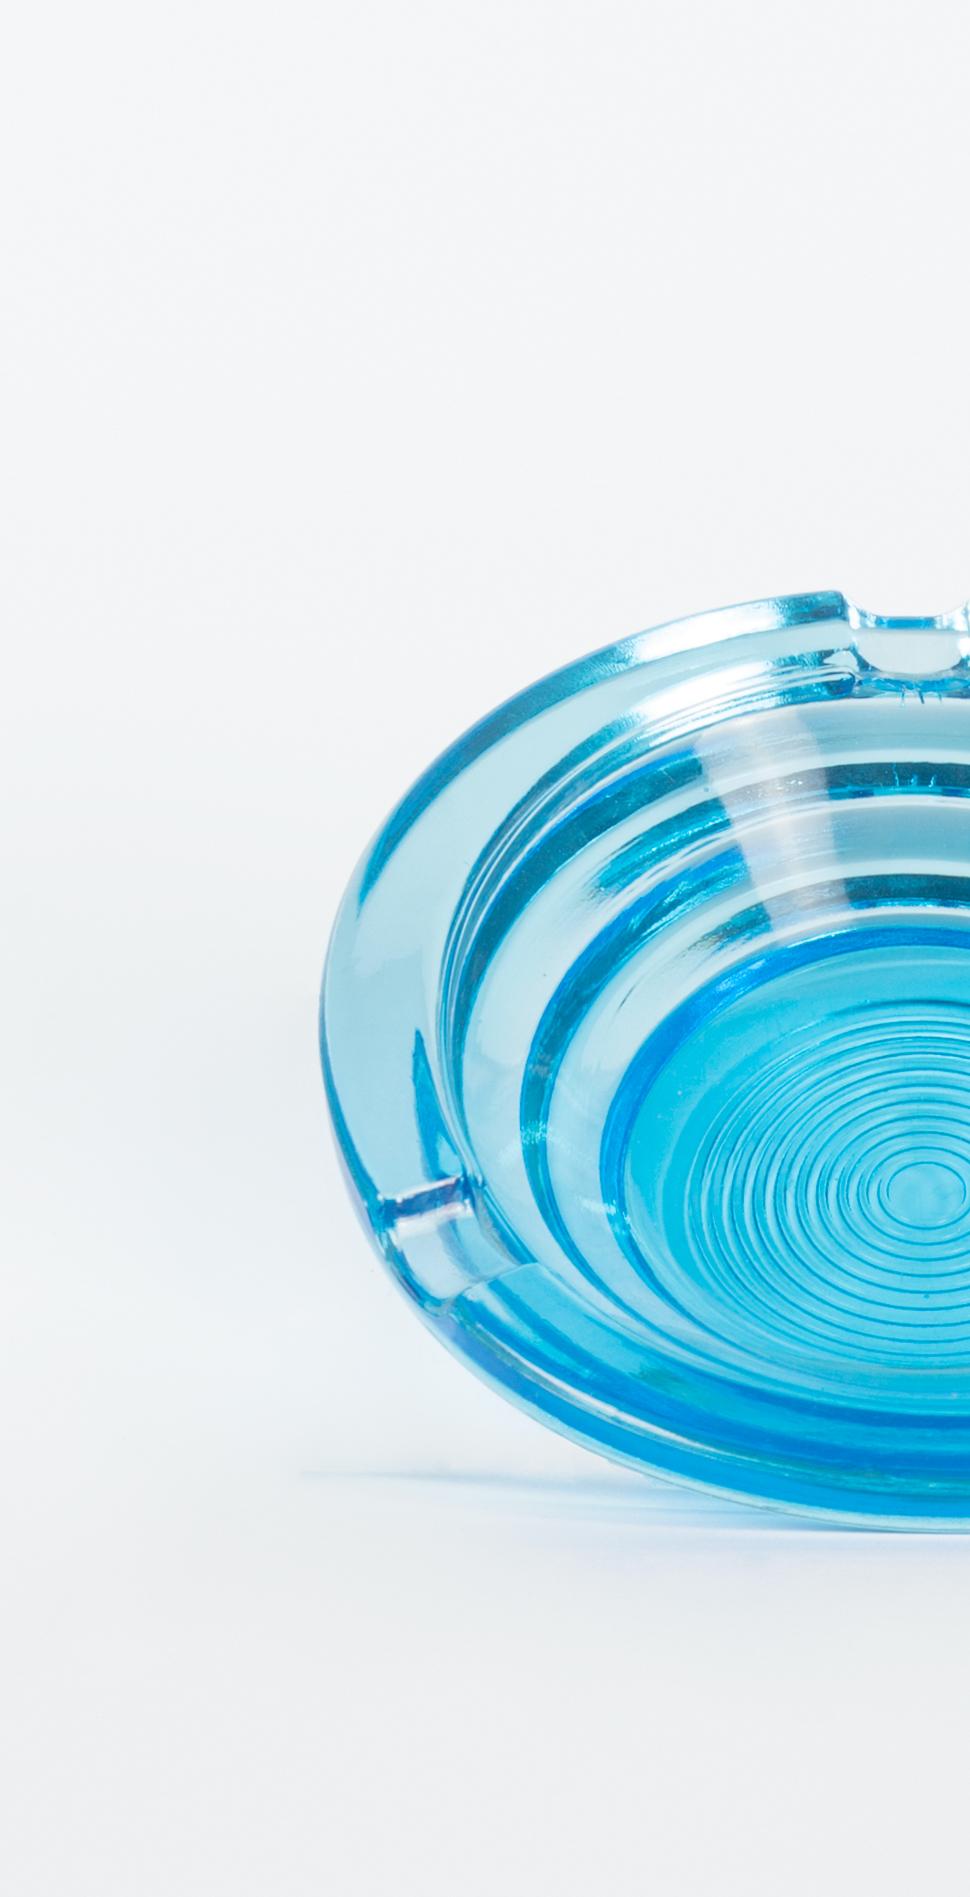 Le cendrier bleu en verre est un élégant objet décoratif en verre, réalisé dans les années 1970.

Cendrier en verre très élégant de forme ronde et de couleur bleue brillante.

Bonnes conditions.